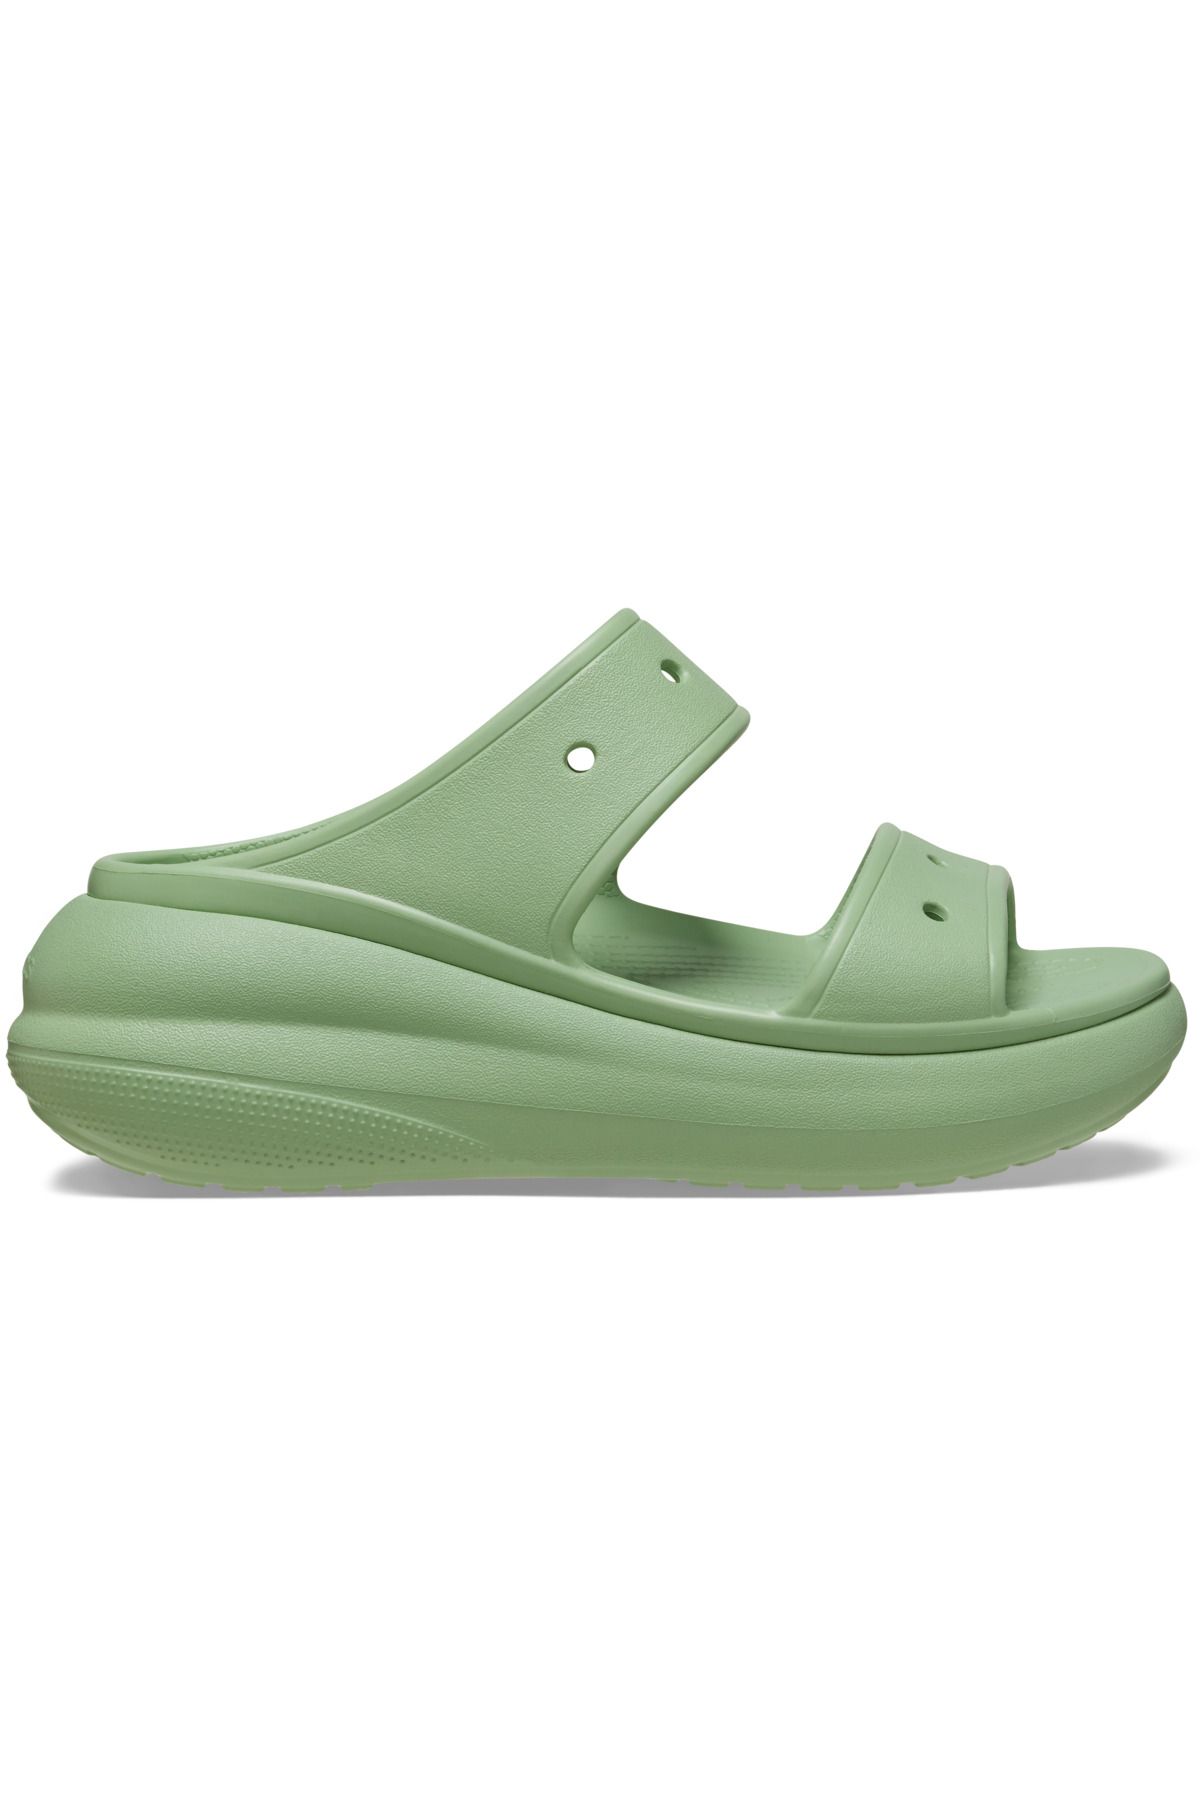 Crocs Classic Crush Sandal Kadın Terlik 207670-374 Fair Green